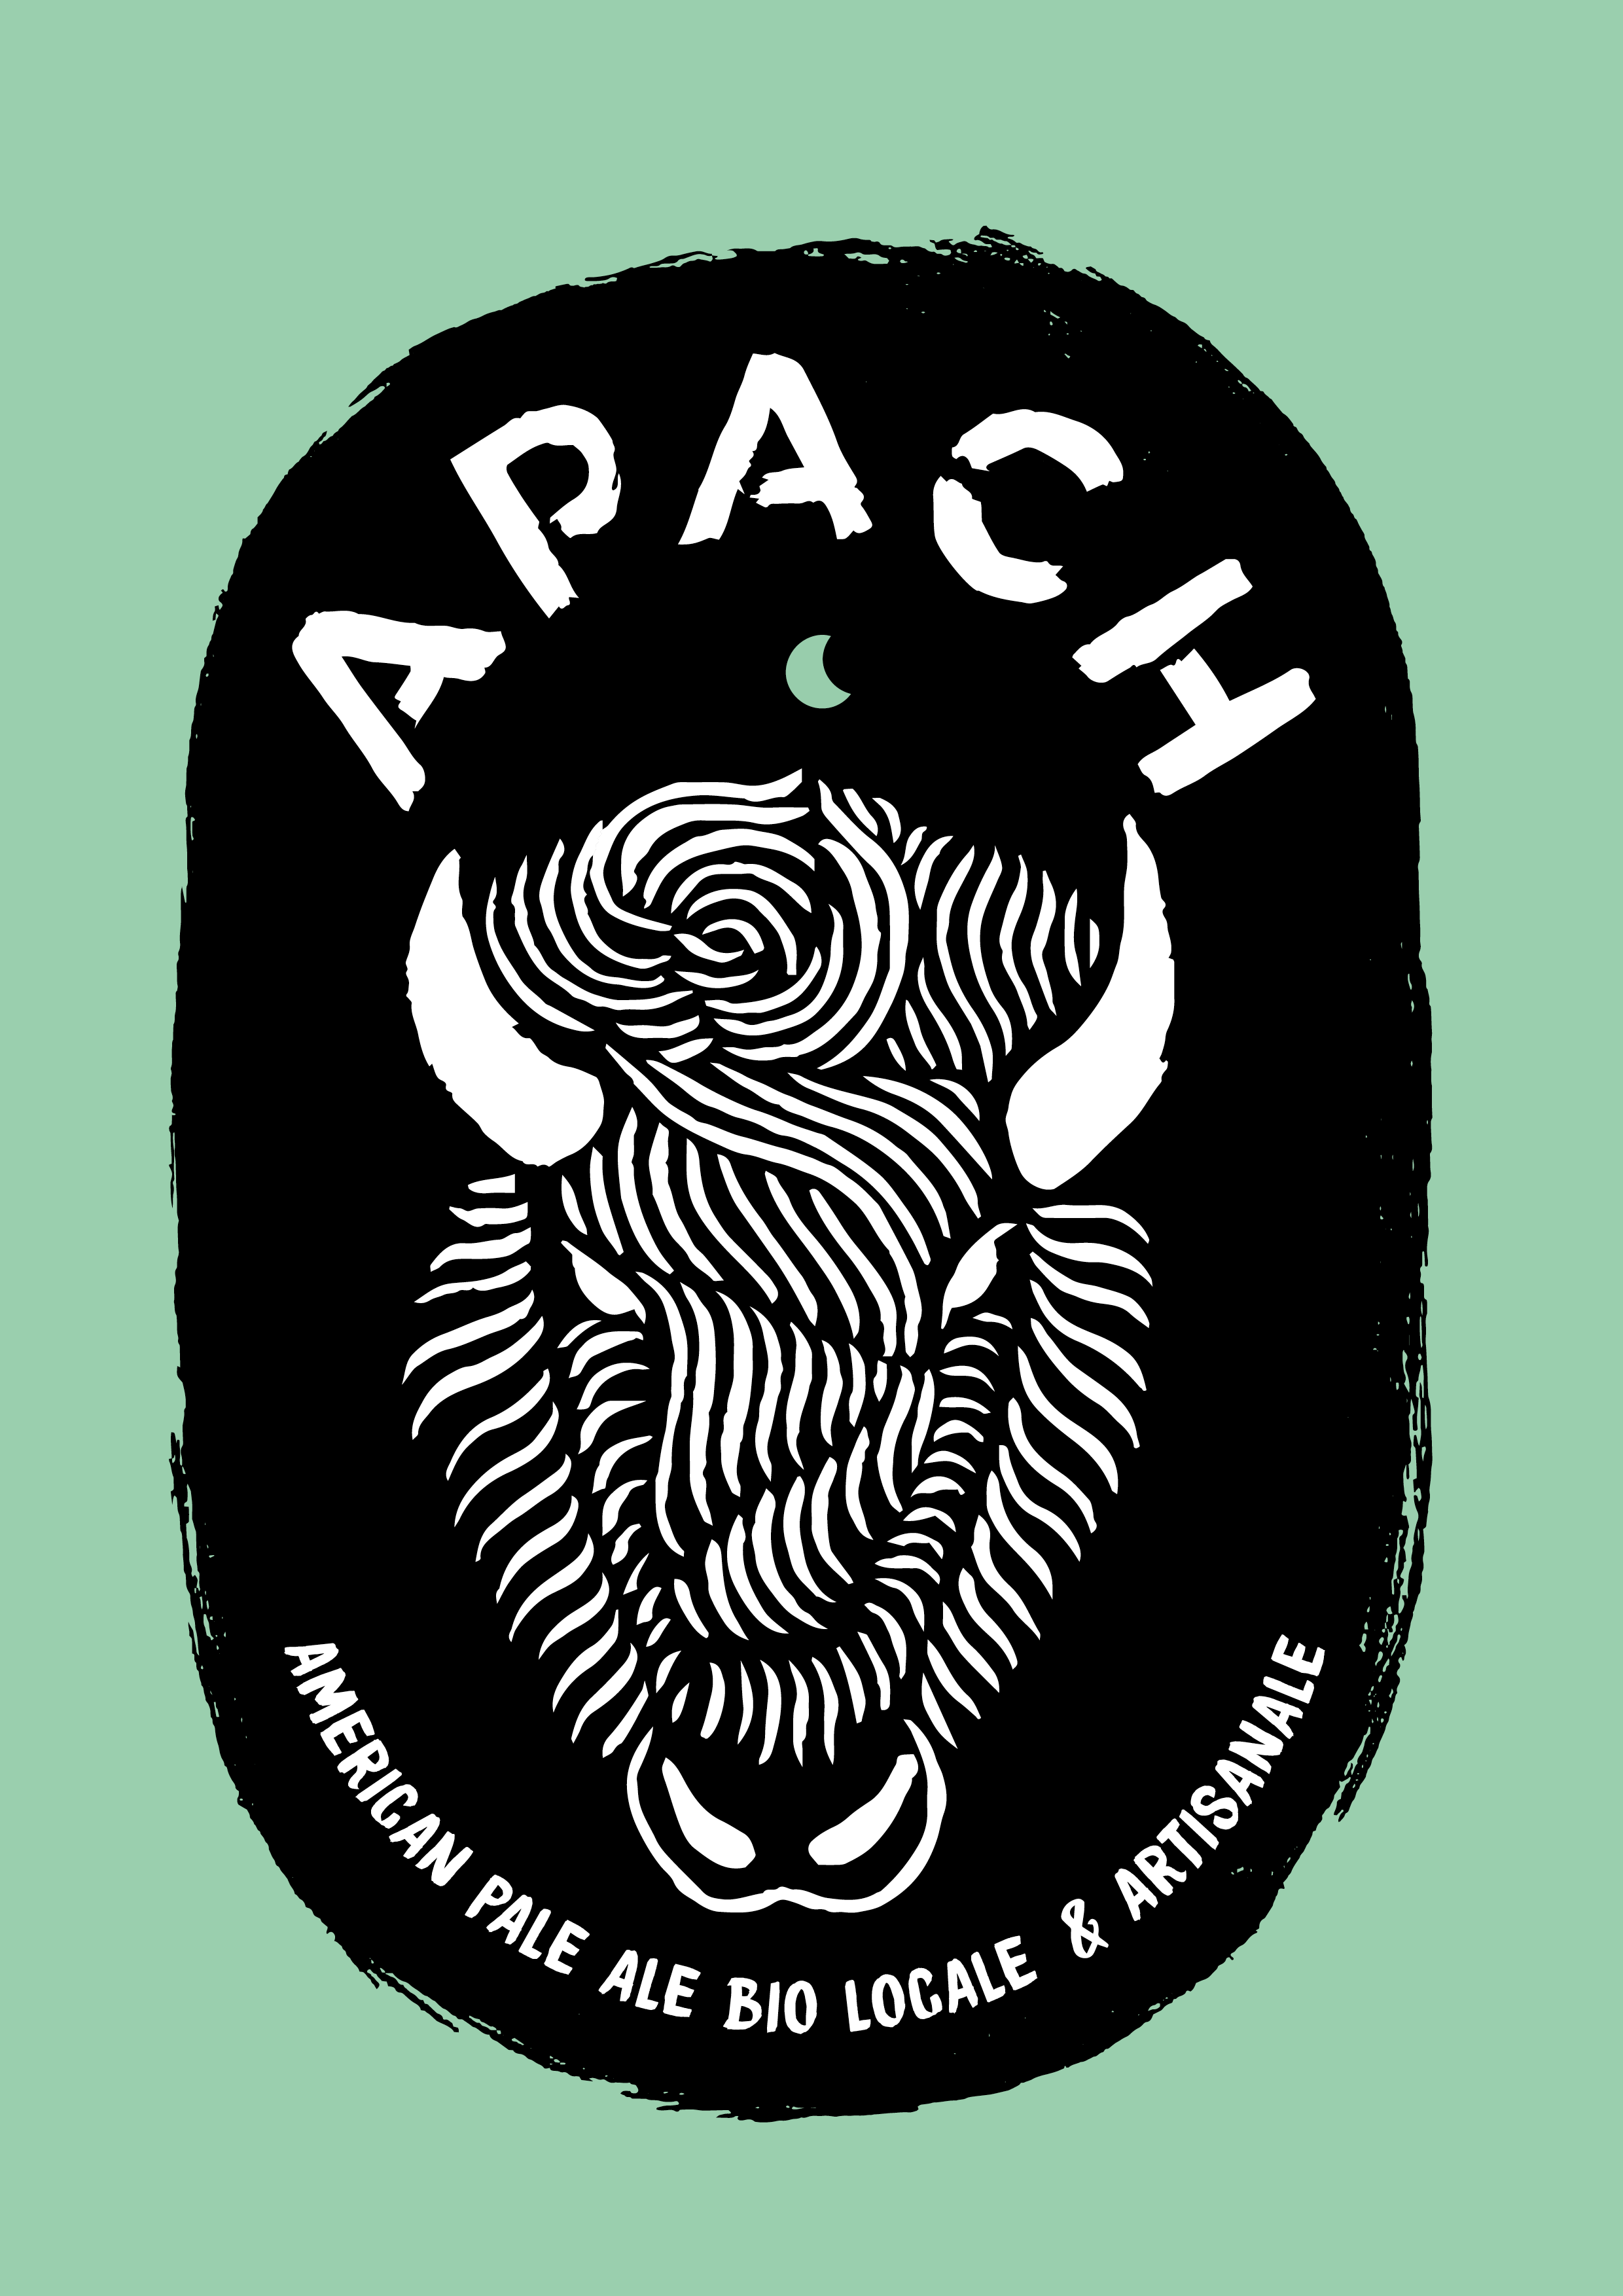 apach